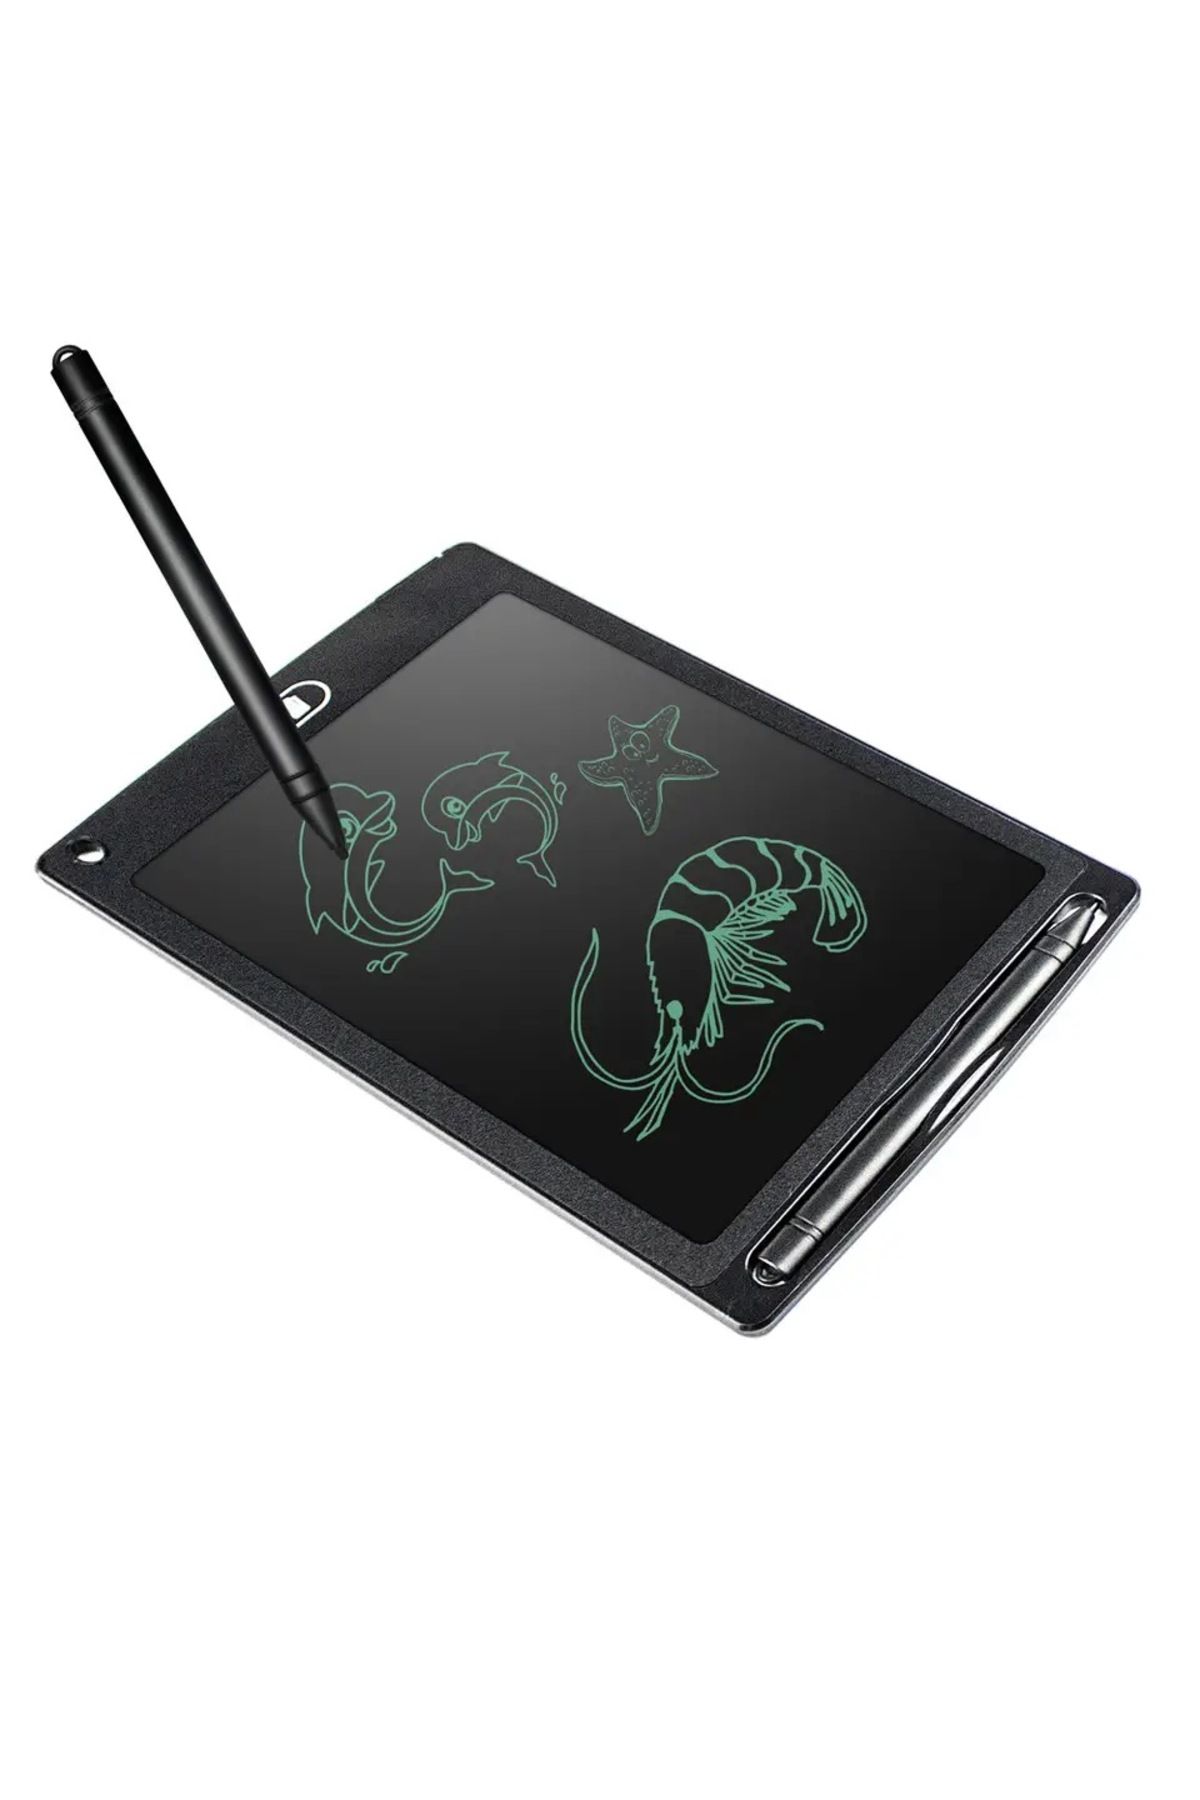 The Lavinia Dijital Kalemli Yazı Tahtası Resim Not Çizimler Hafif Ince Tasarımlı Writing Tablet Lcd 8.5 Inç